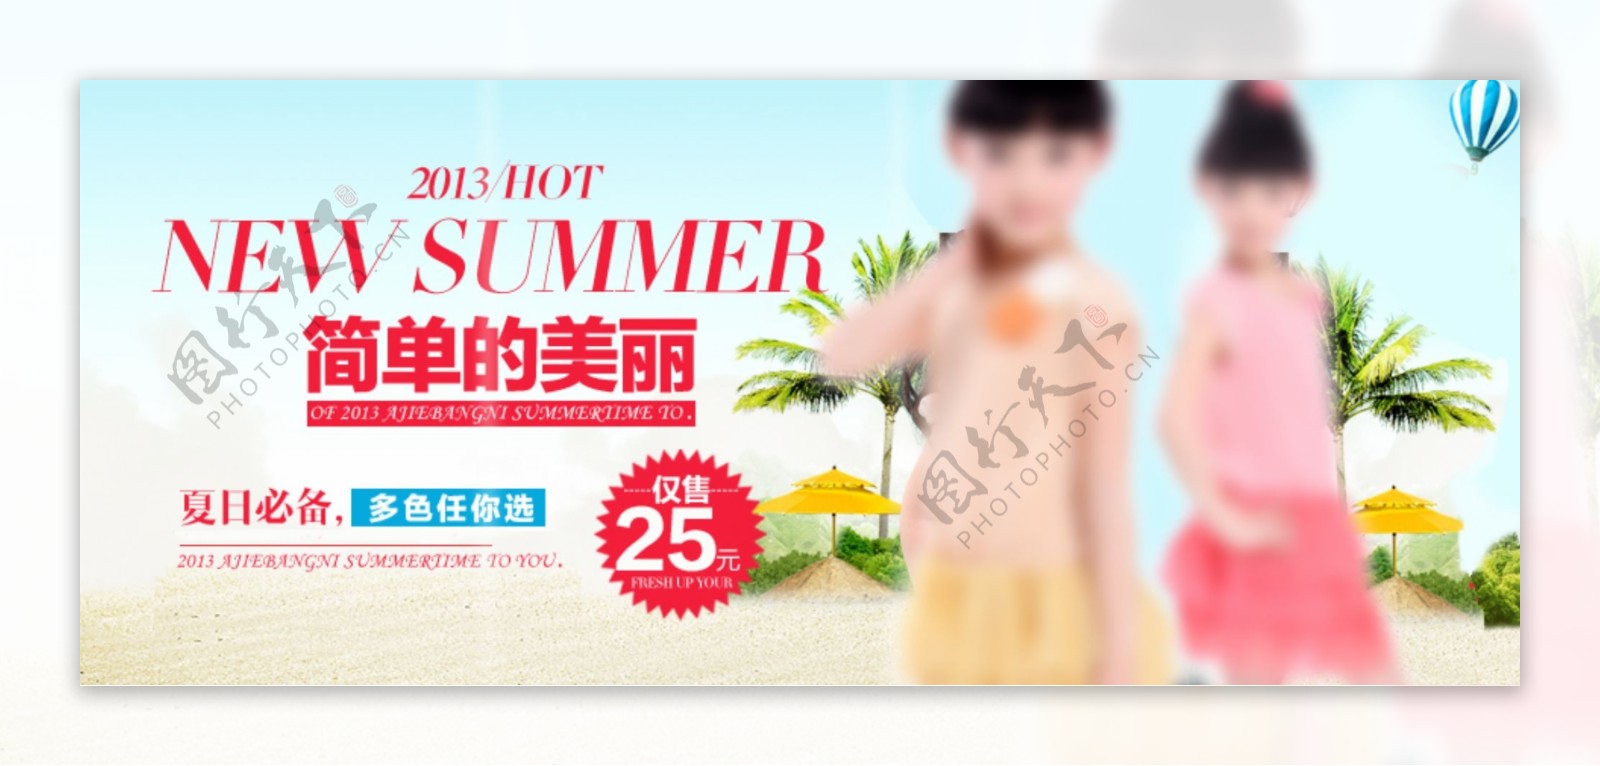 淘宝店铺夏季热卖宝贝童装海报设计素材